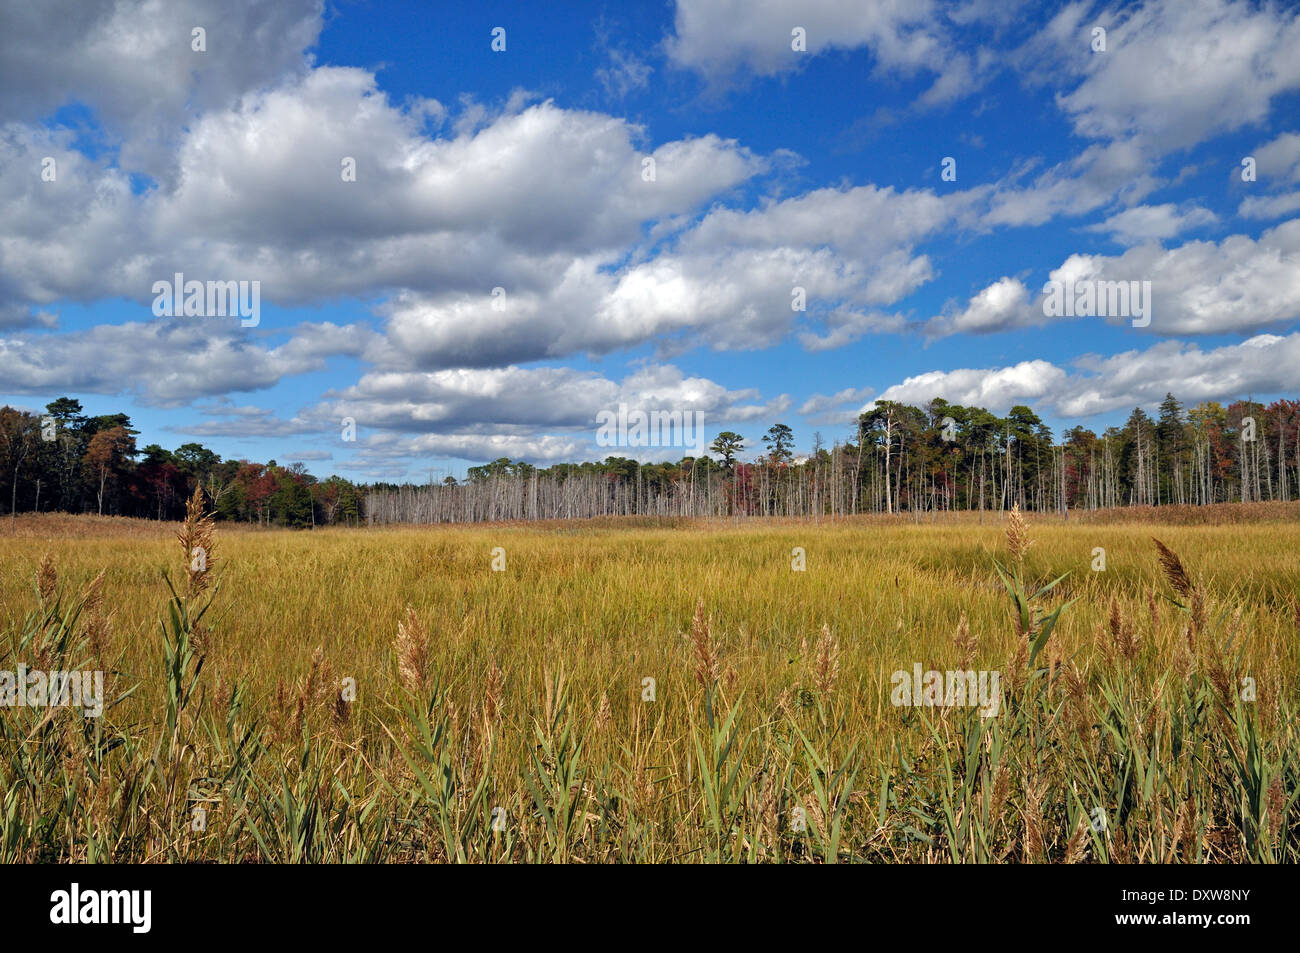 Coastal wetlands near Cape May, New Jersey, USA. Stock Photo